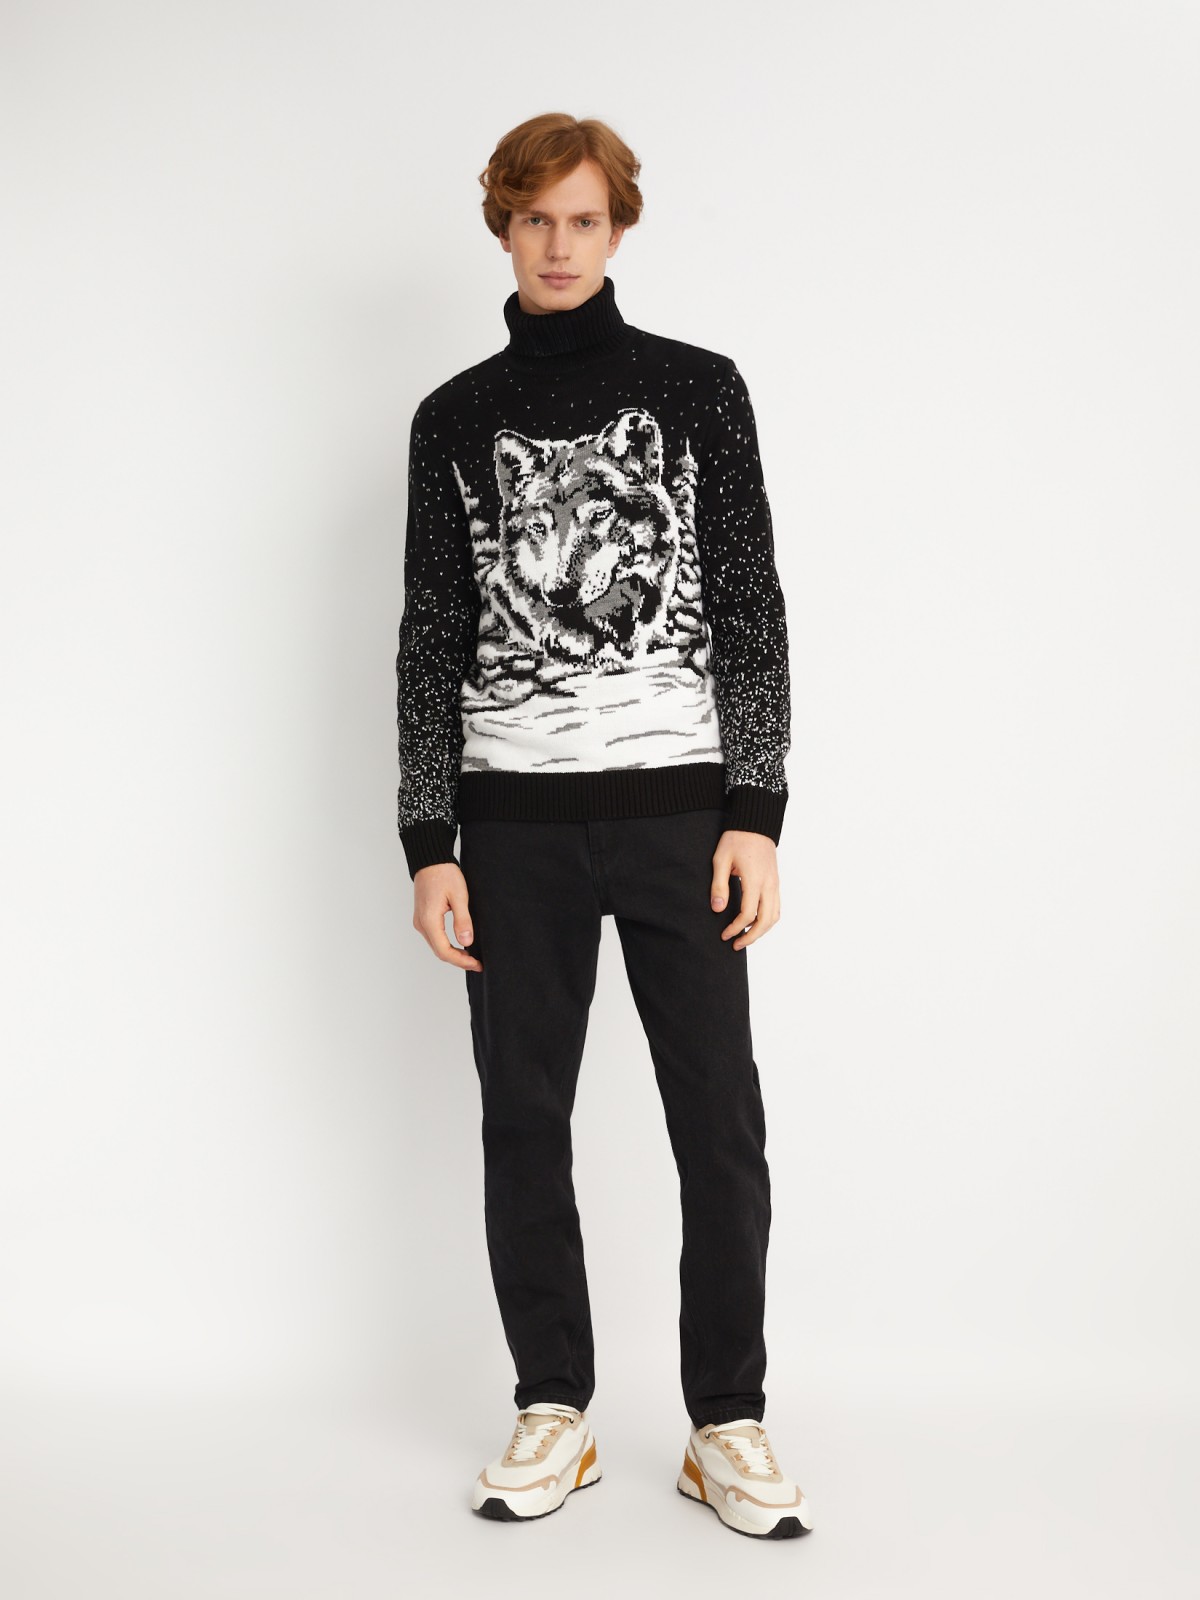 Вязаный свитер из акрила с волком zolla 013446123023, цвет черный, размер S - фото 2